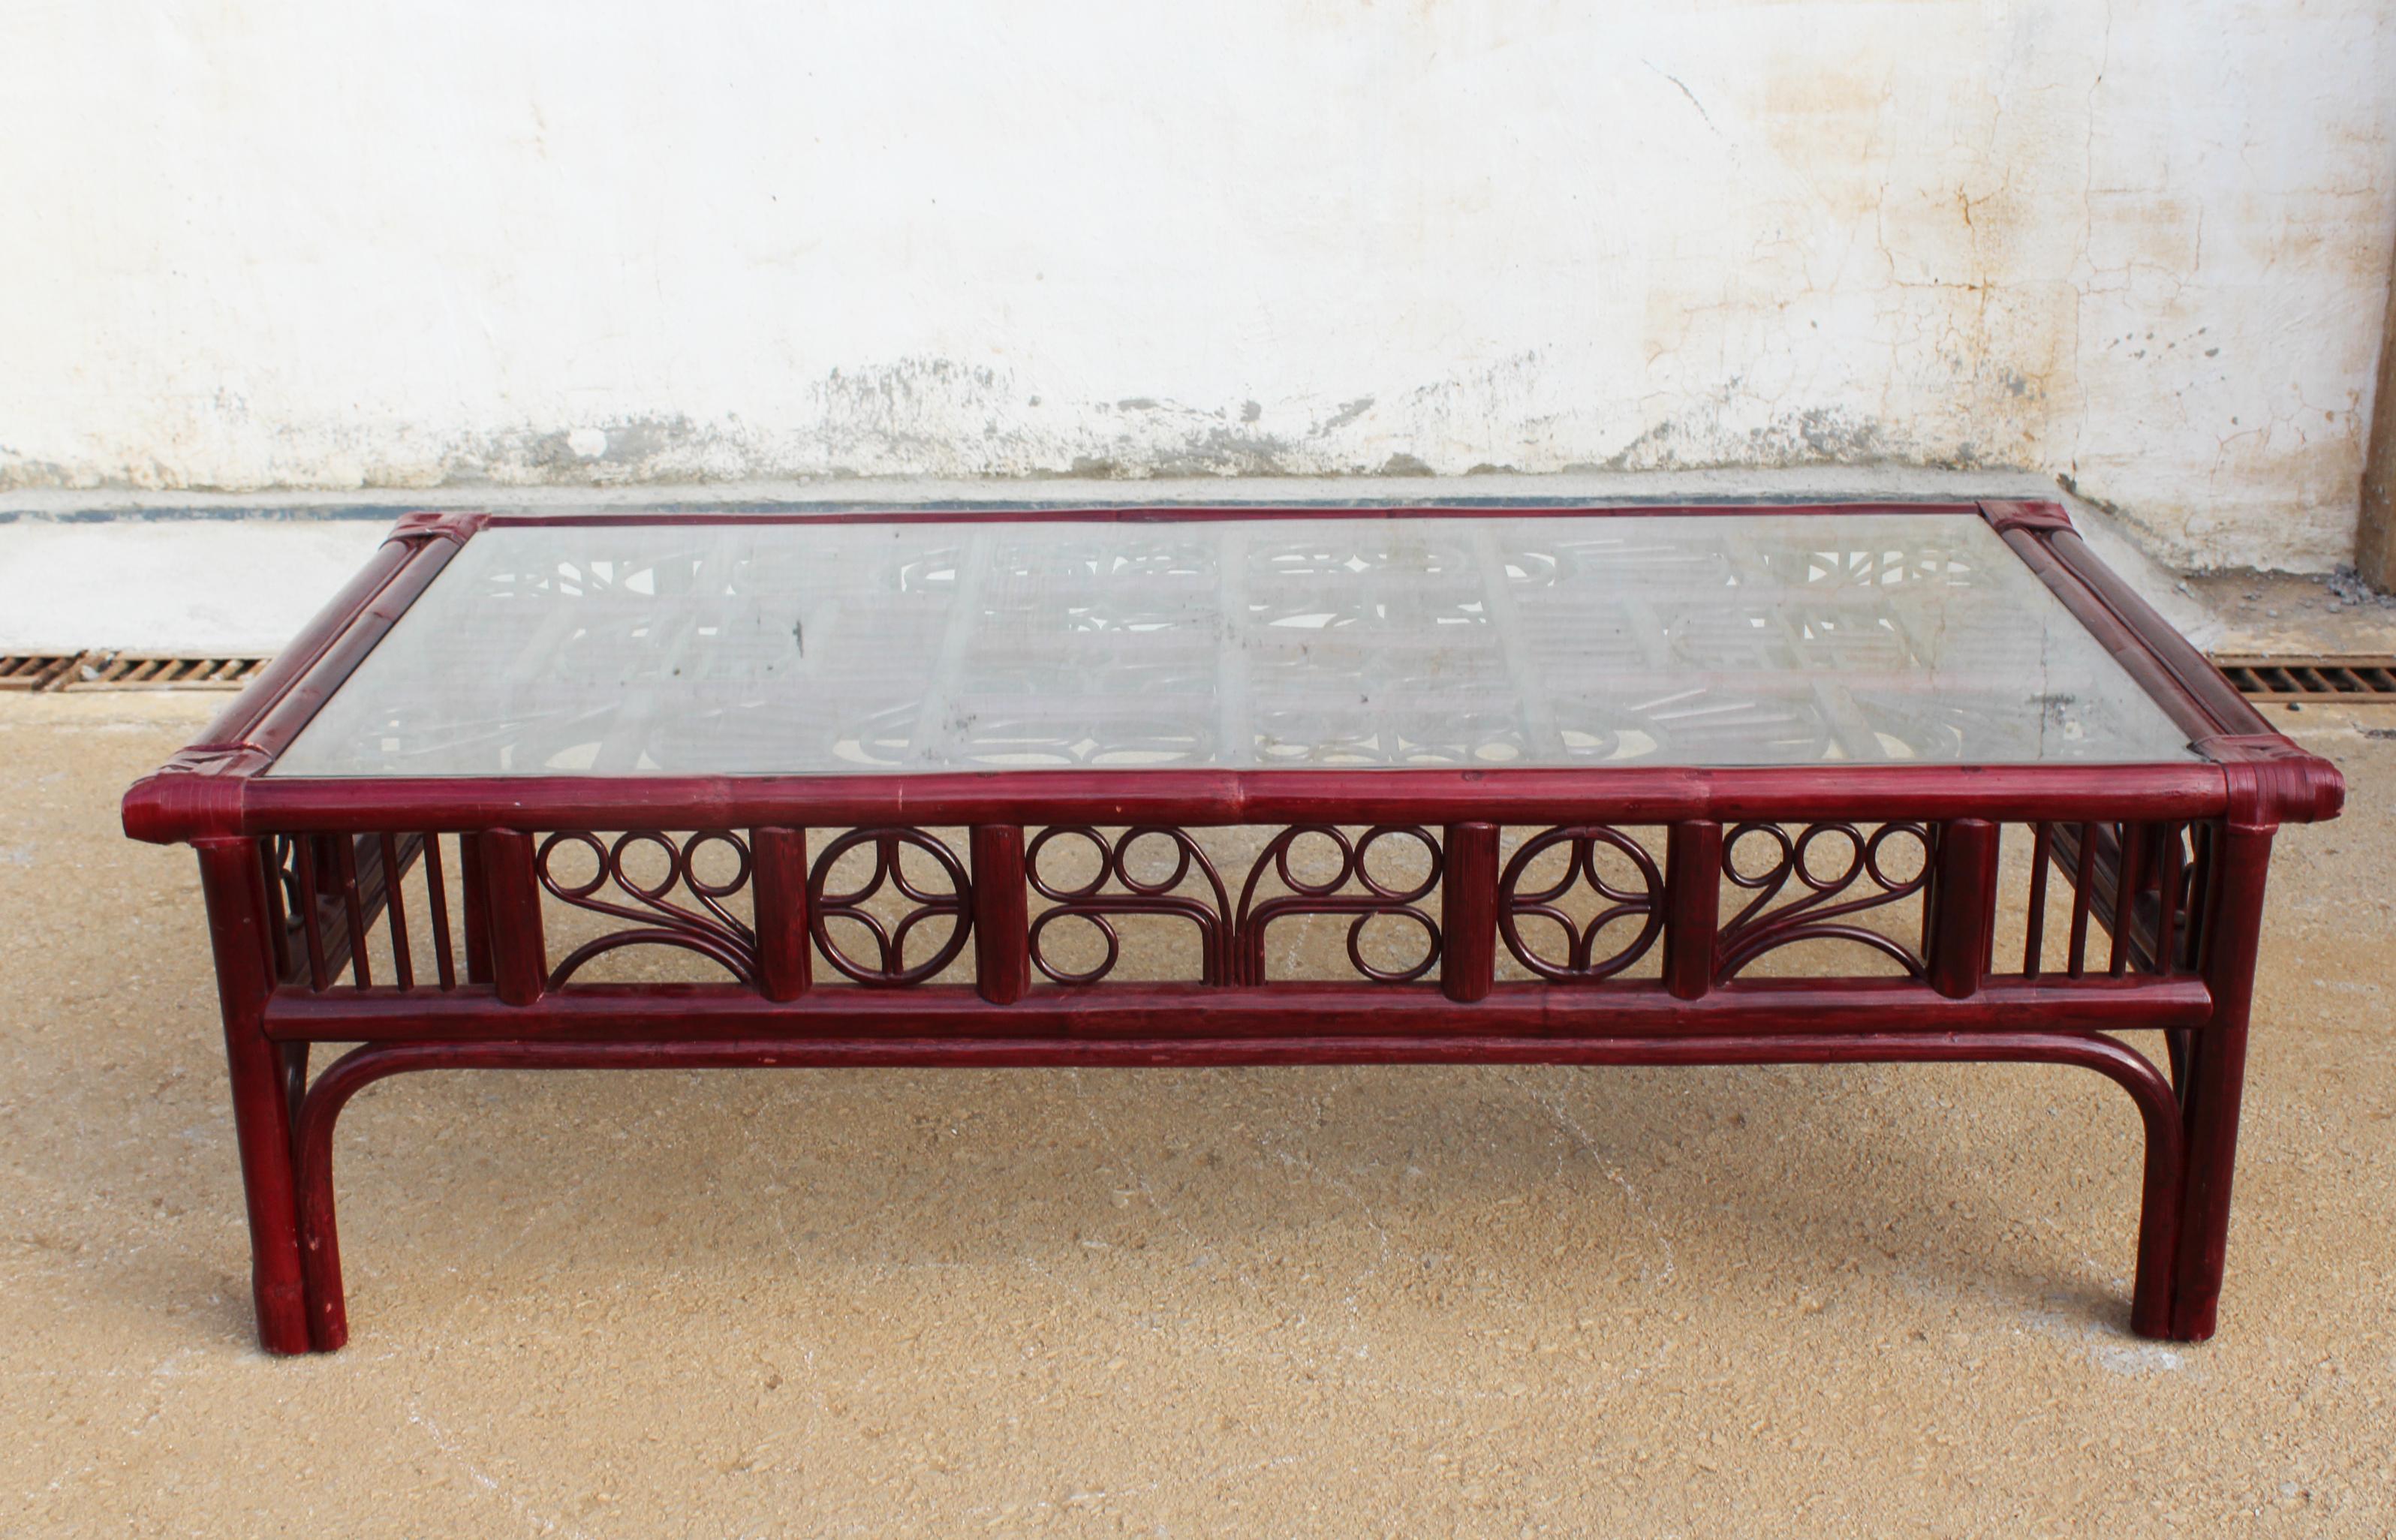 Table basse rectangulaire en bois rouge espagnol des années 1970, imitant le bambou canné, avec des liens en cuir, un plateau en verre, et décorée de motifs géométriques orientalistes.
  